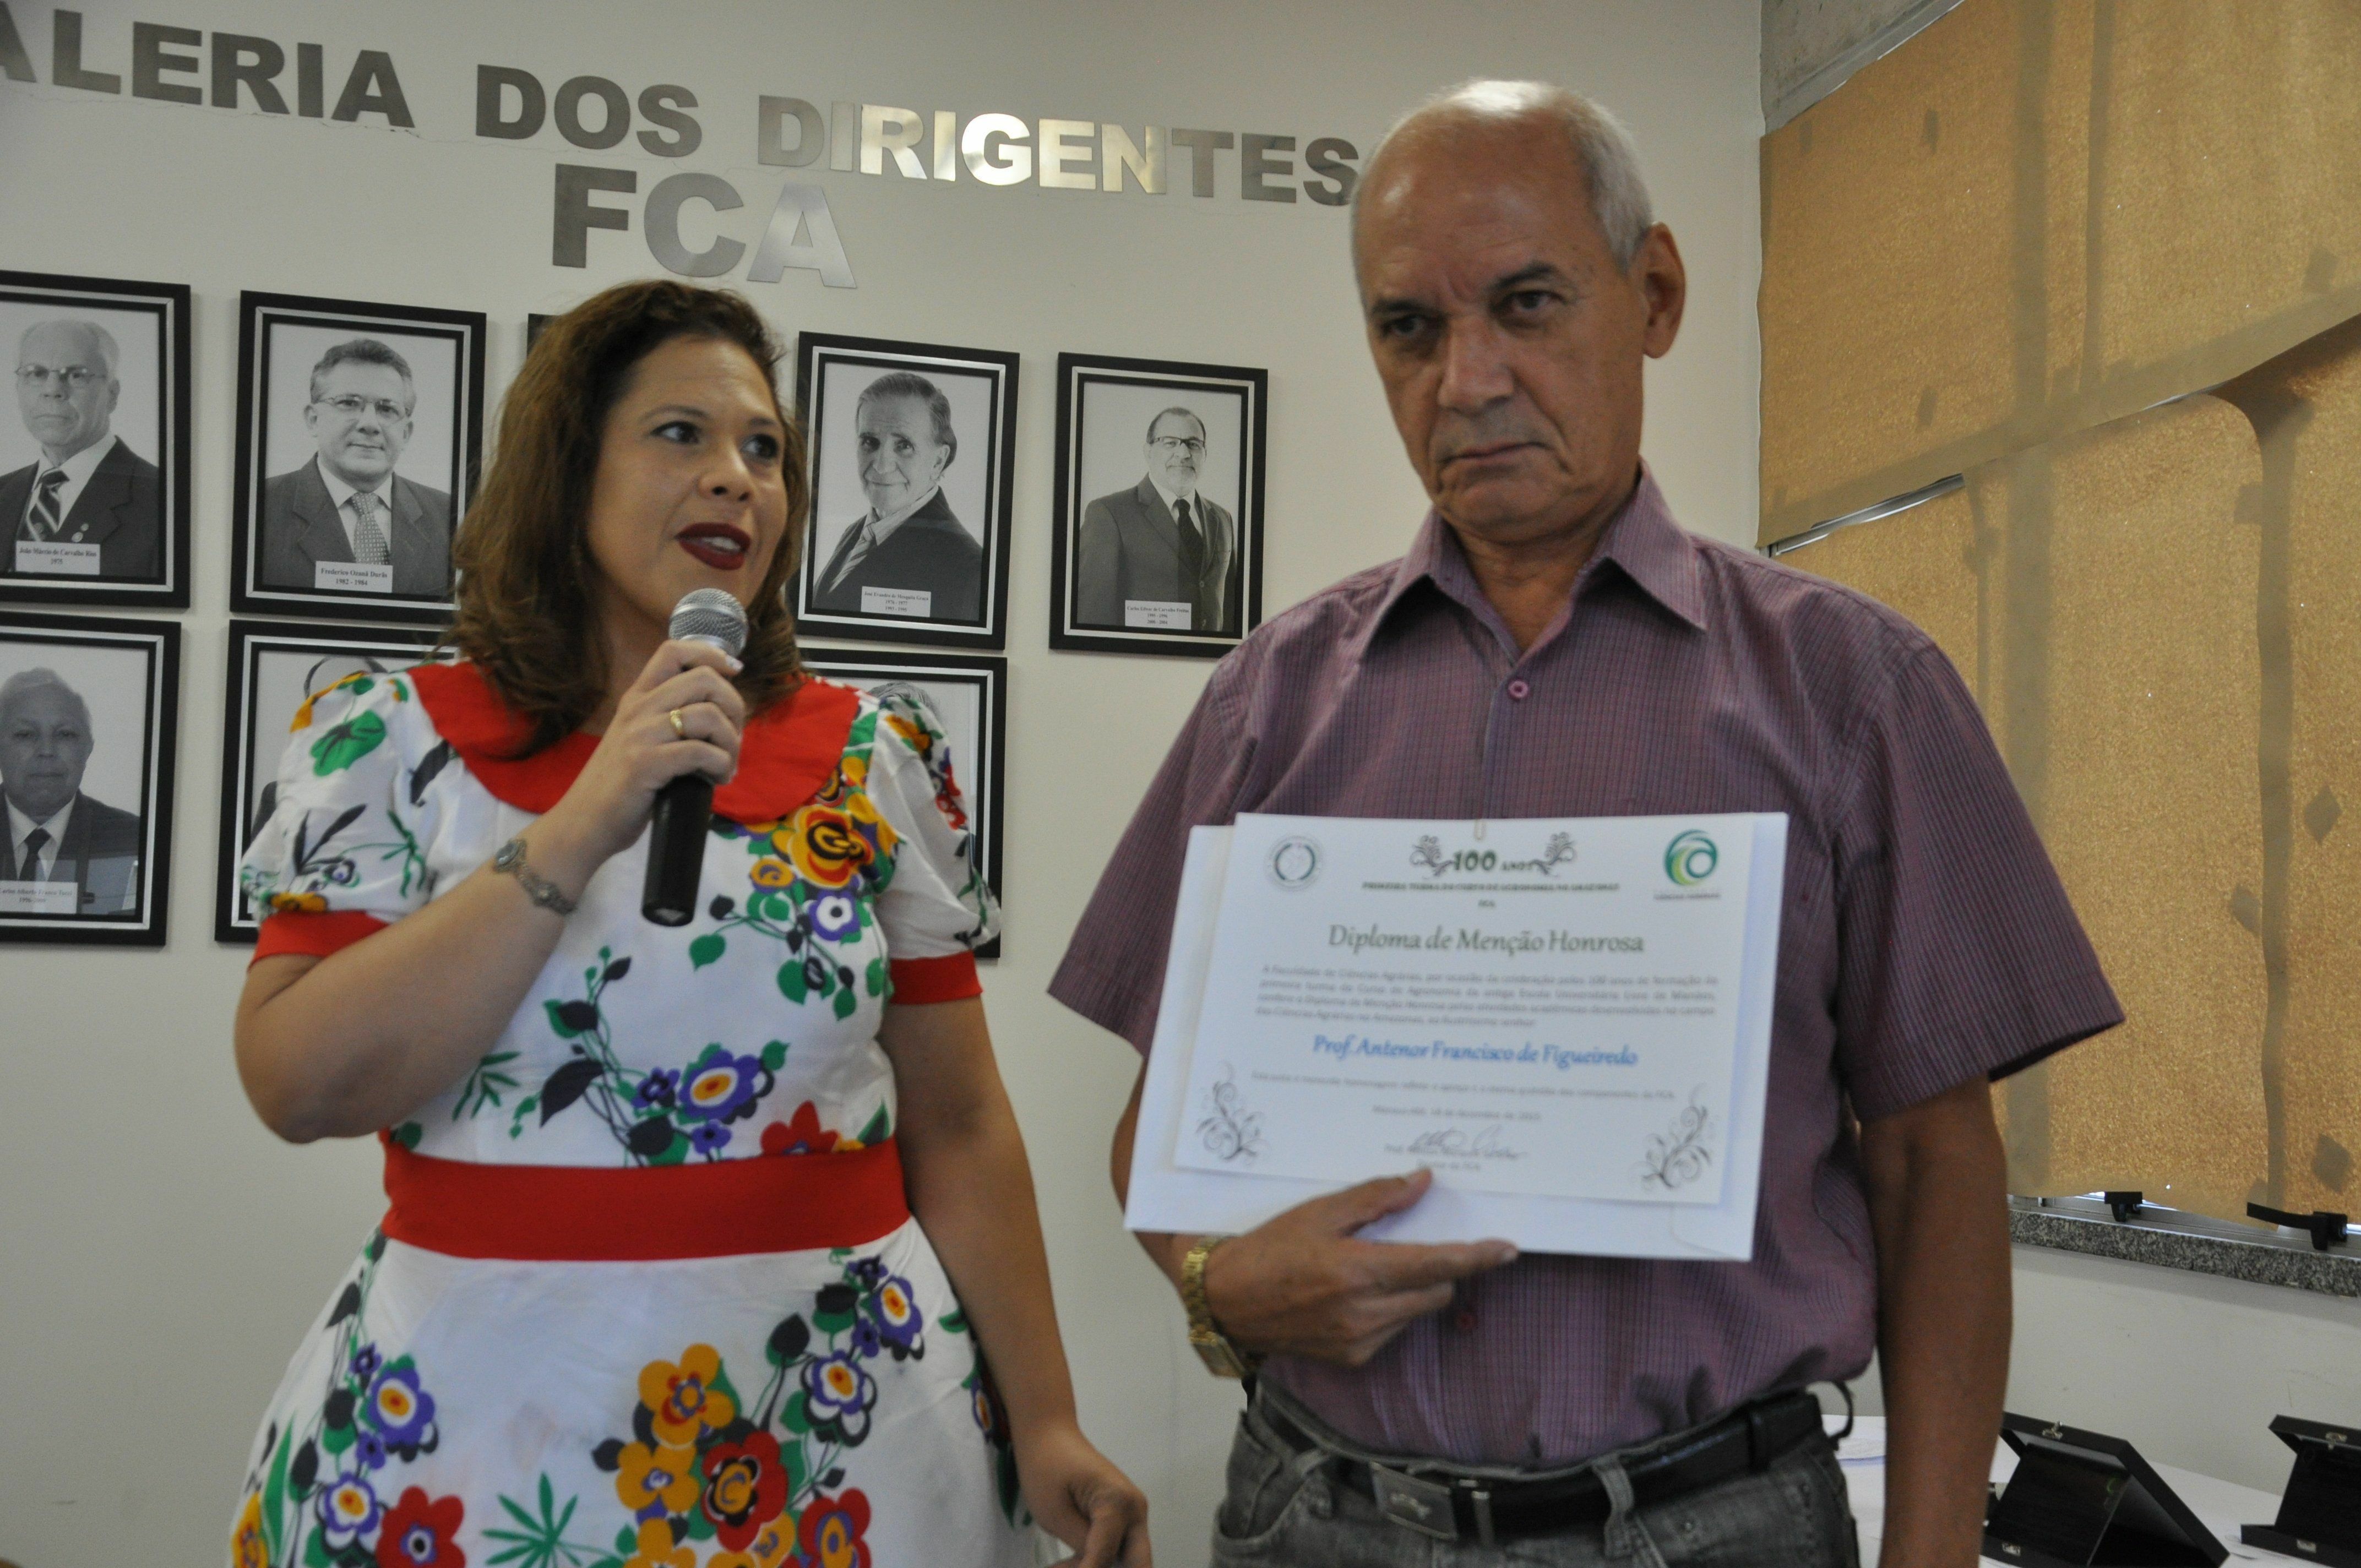 Professora Expedita Pereira (FCA) e Antenor de Figueiredo, professor aposentado